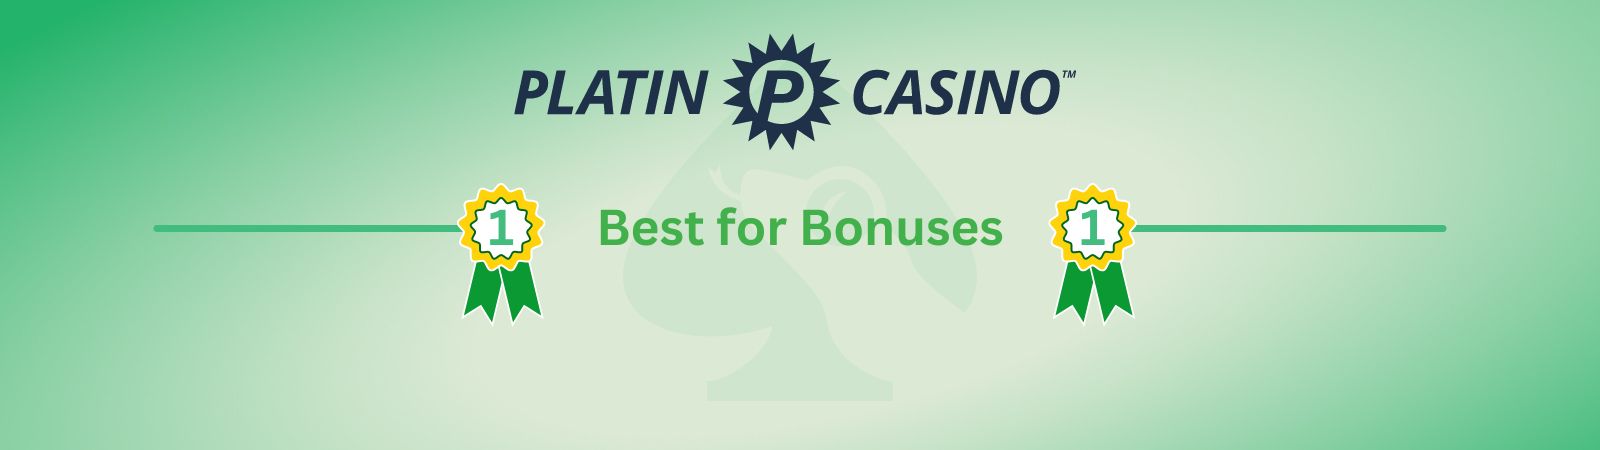 best online casino for bonuses